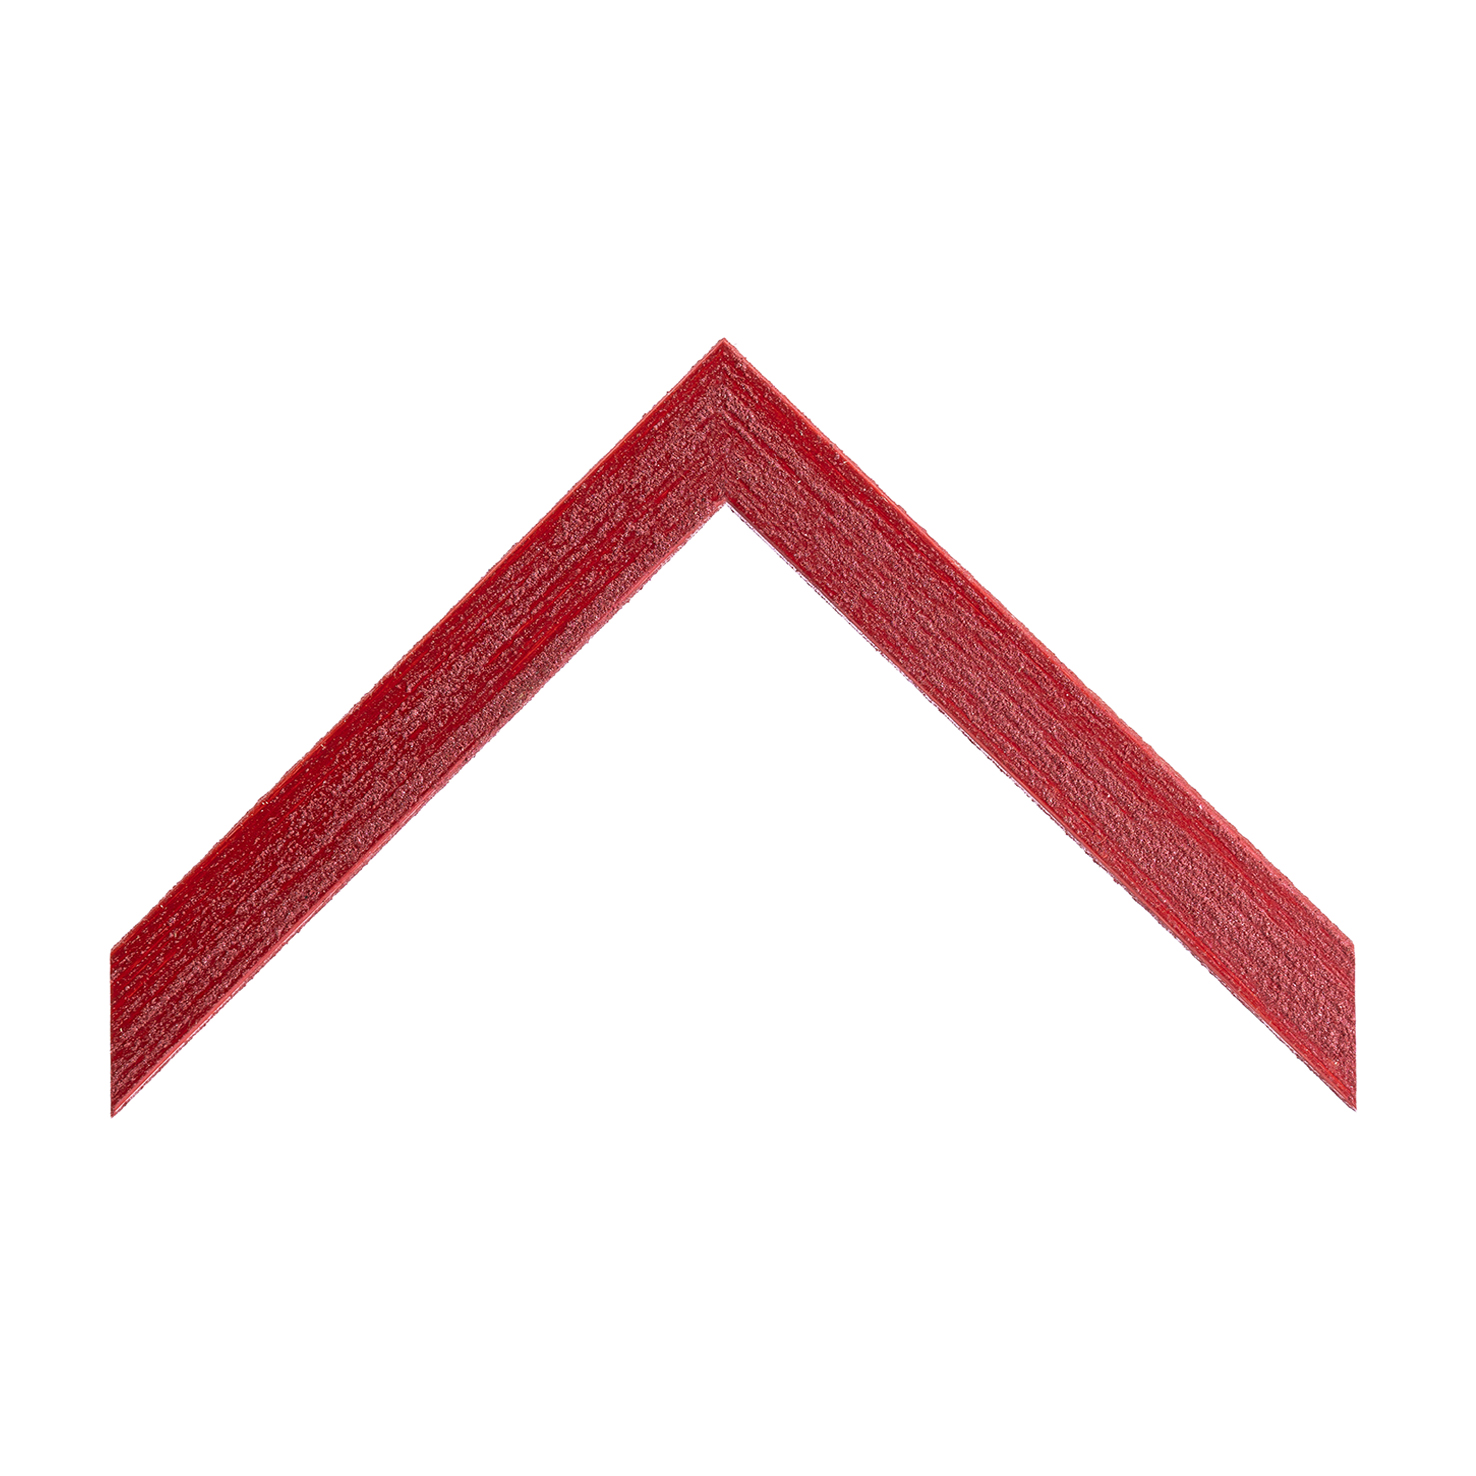 cornice legno ayous cassetta rosso sabbiato manuale | Albor